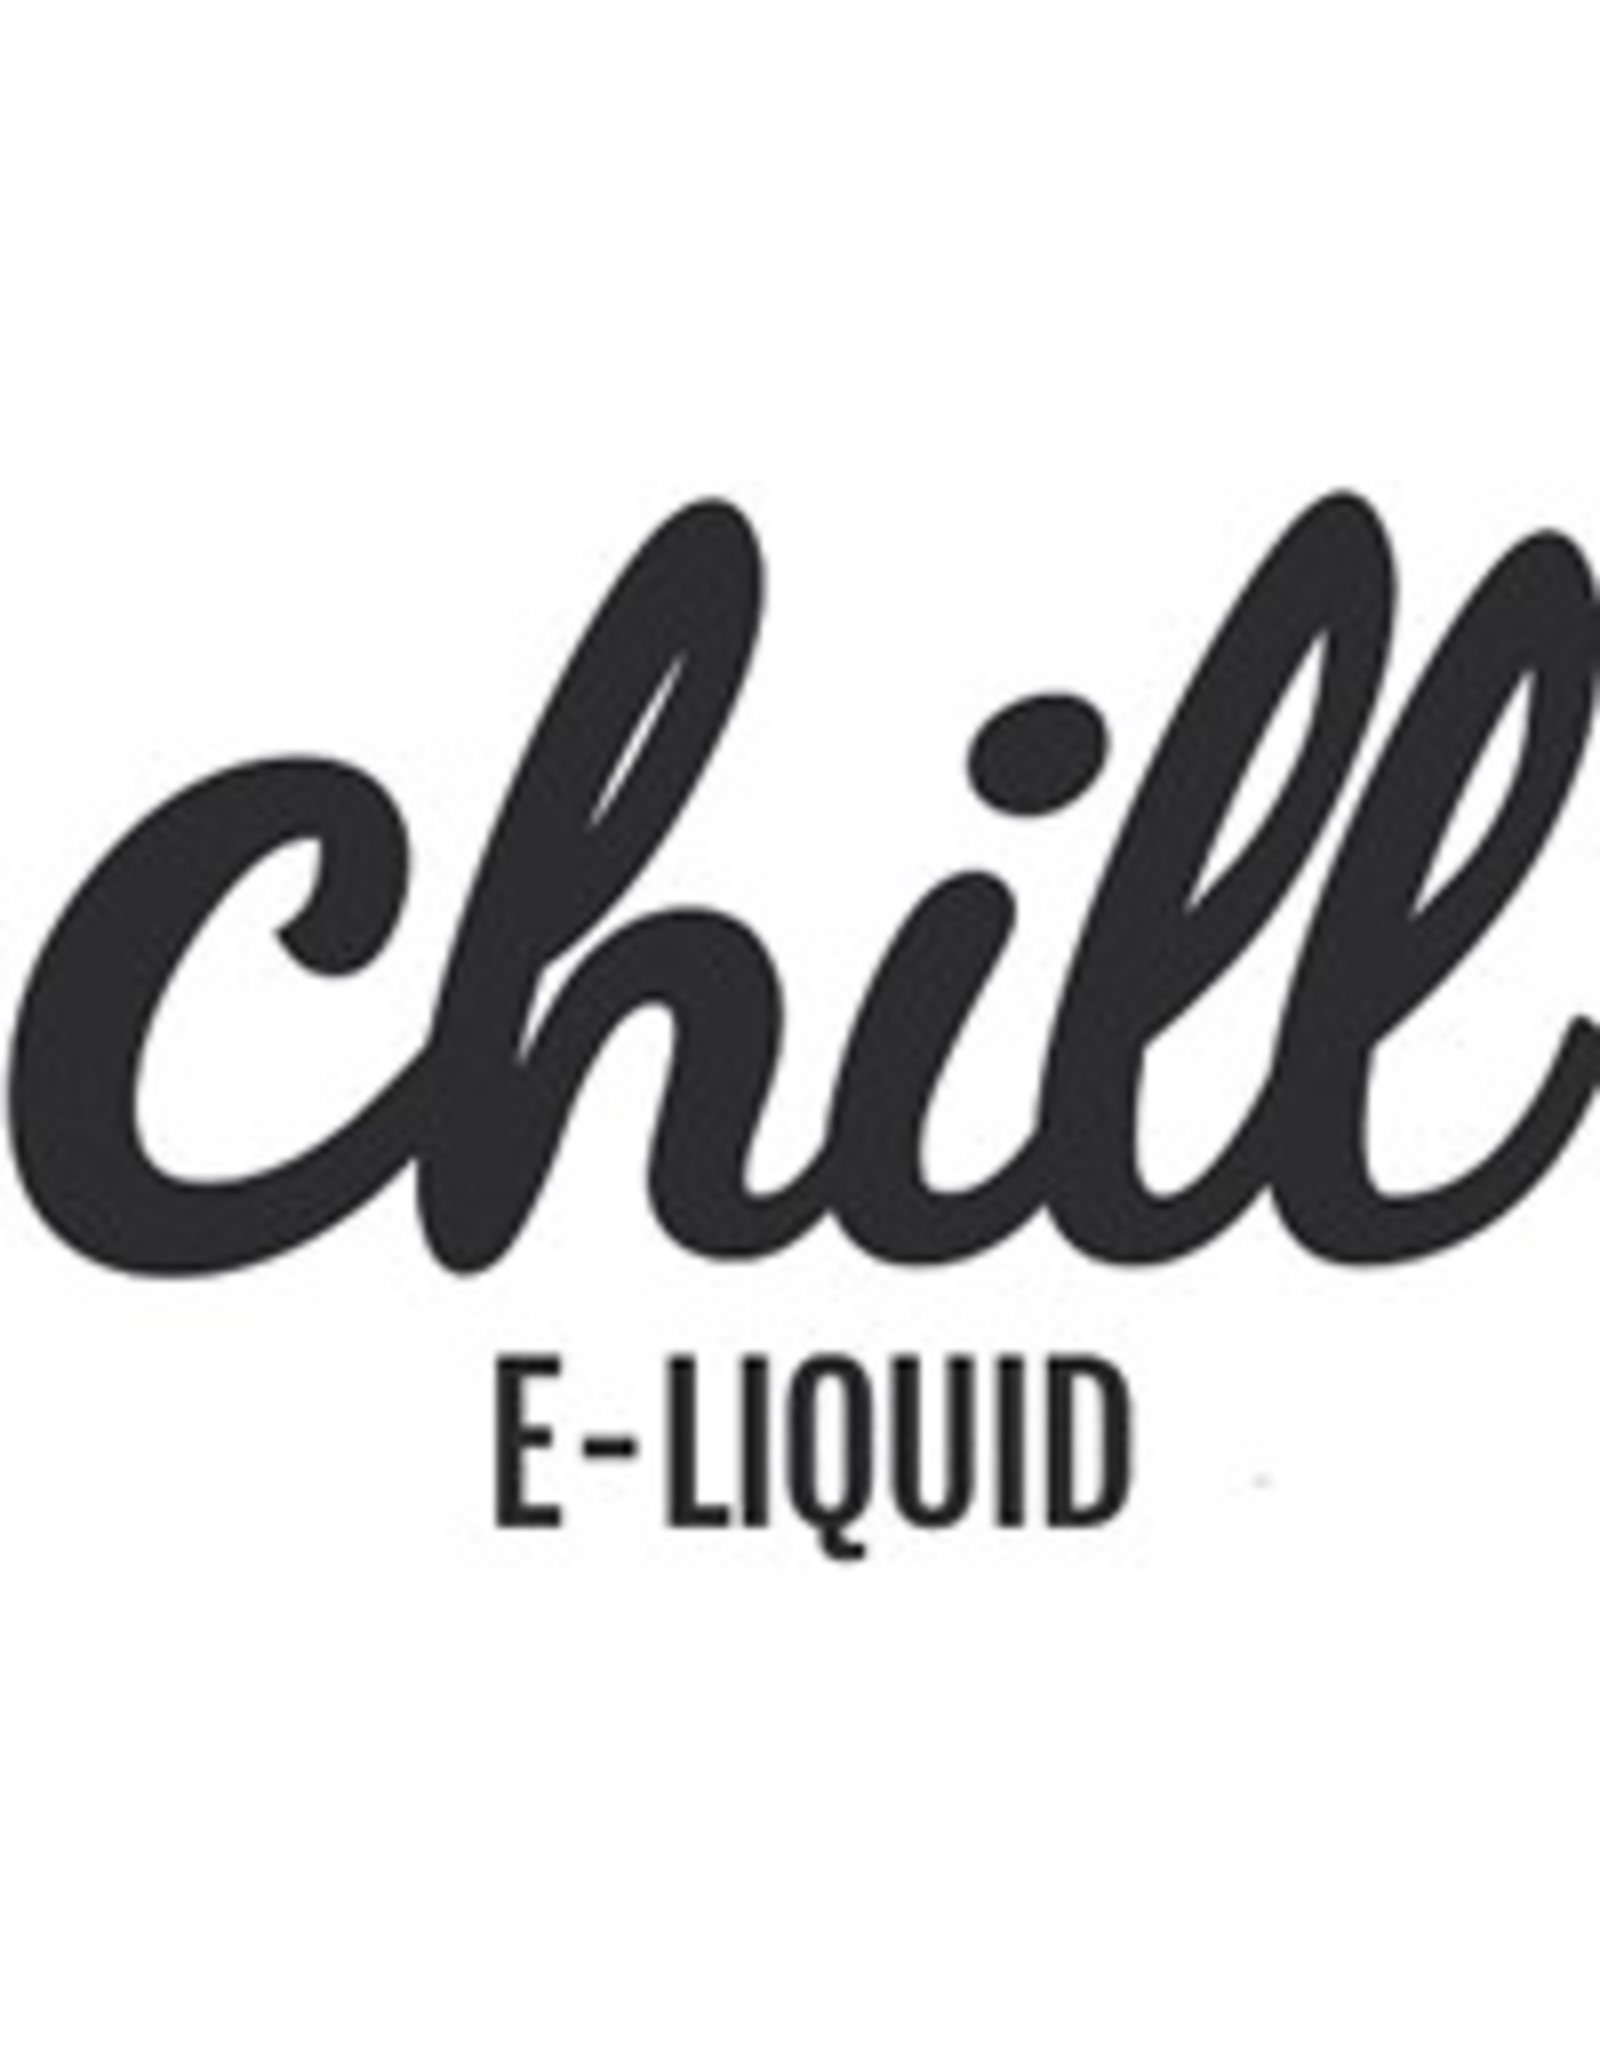 Chill E-Liquid